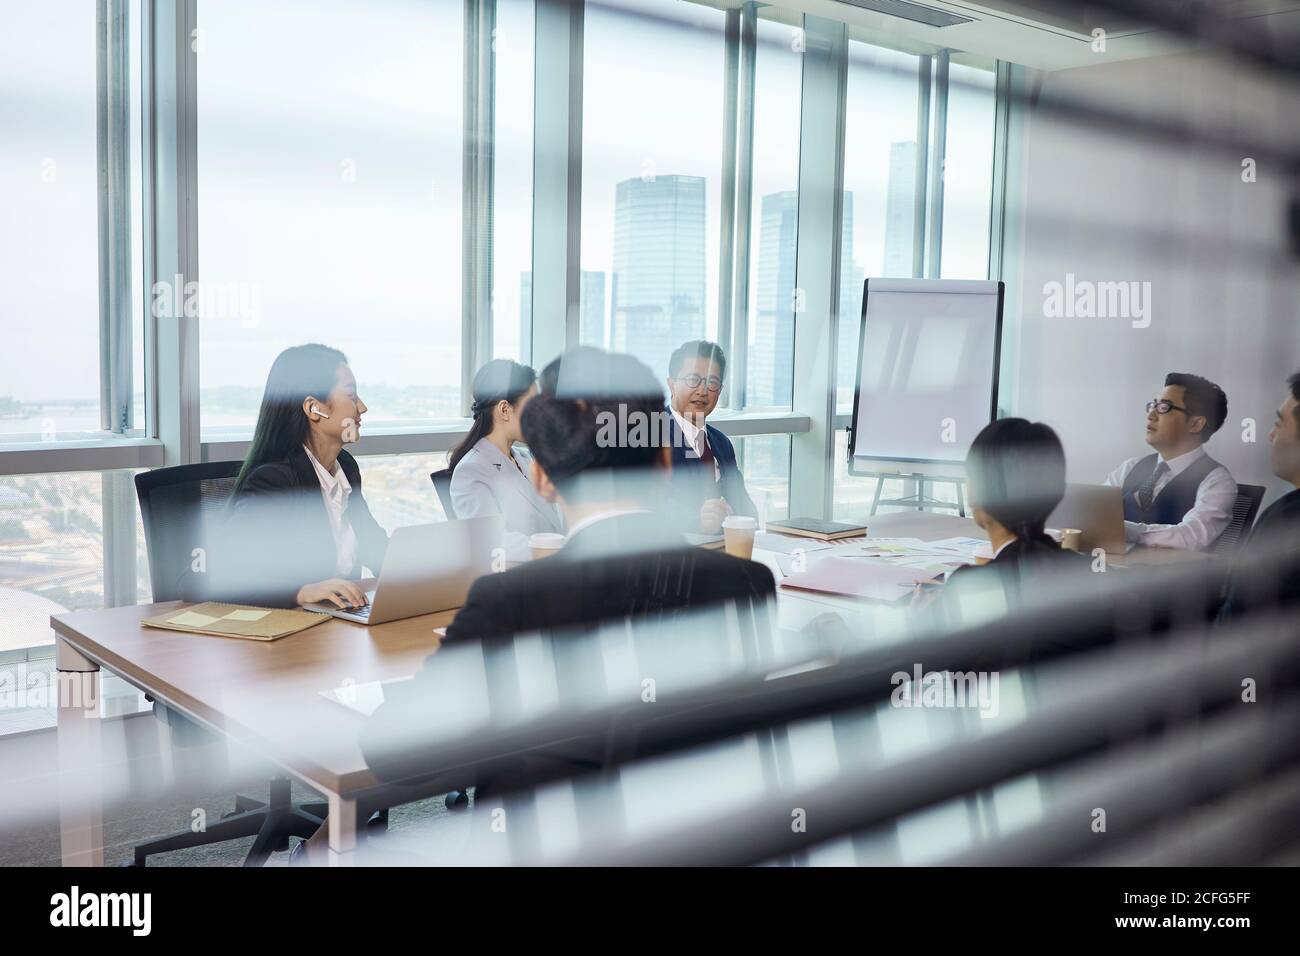 photo en verre d'une réunion d'une équipe de gens d'affaires asiatiques dans la salle de conférence de l'entreprise Banque D'Images